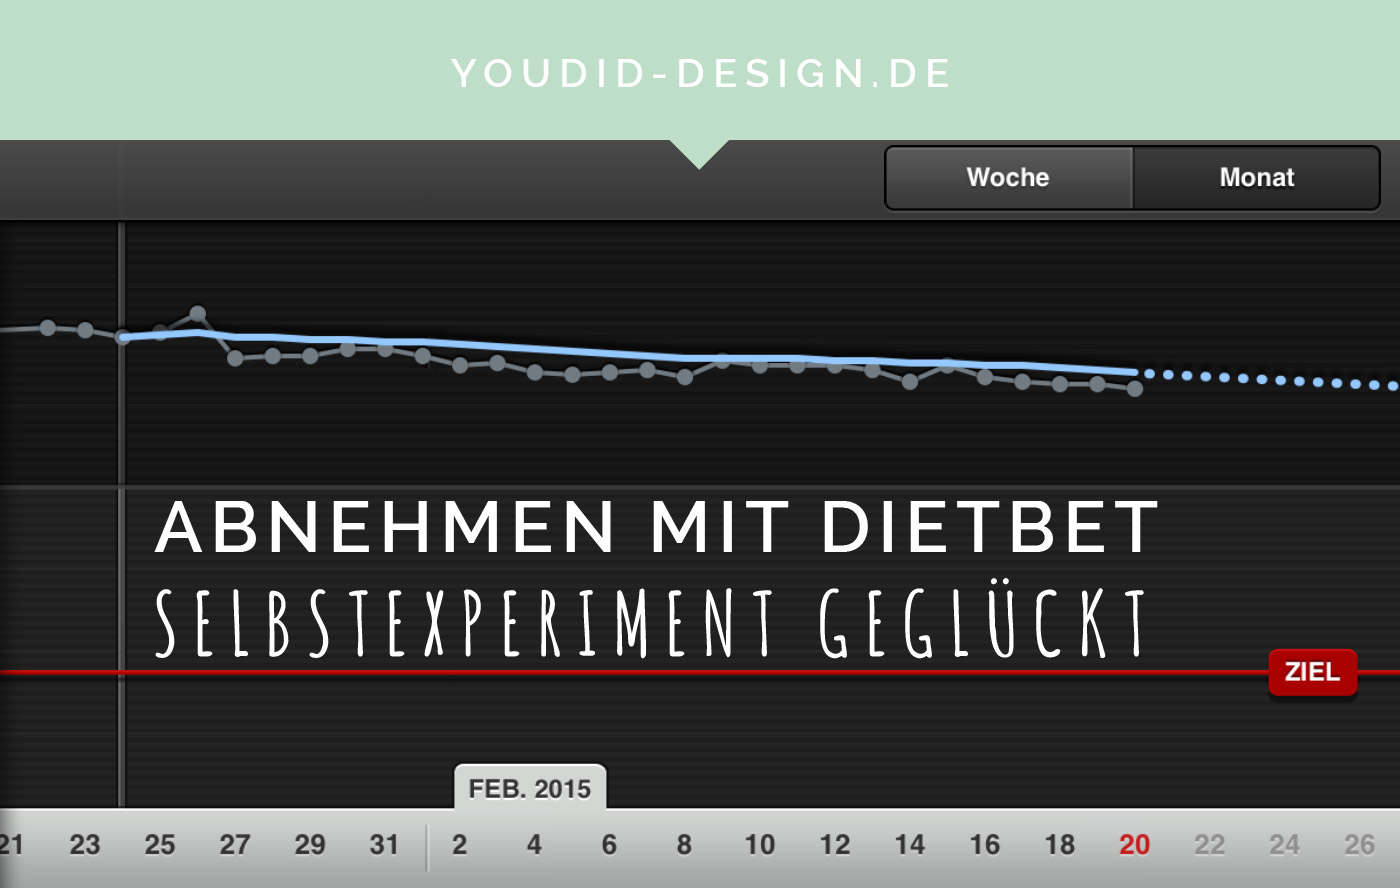 Dietbet geschafft - Abnehmen mit einer Wette | www.youdid-design.de